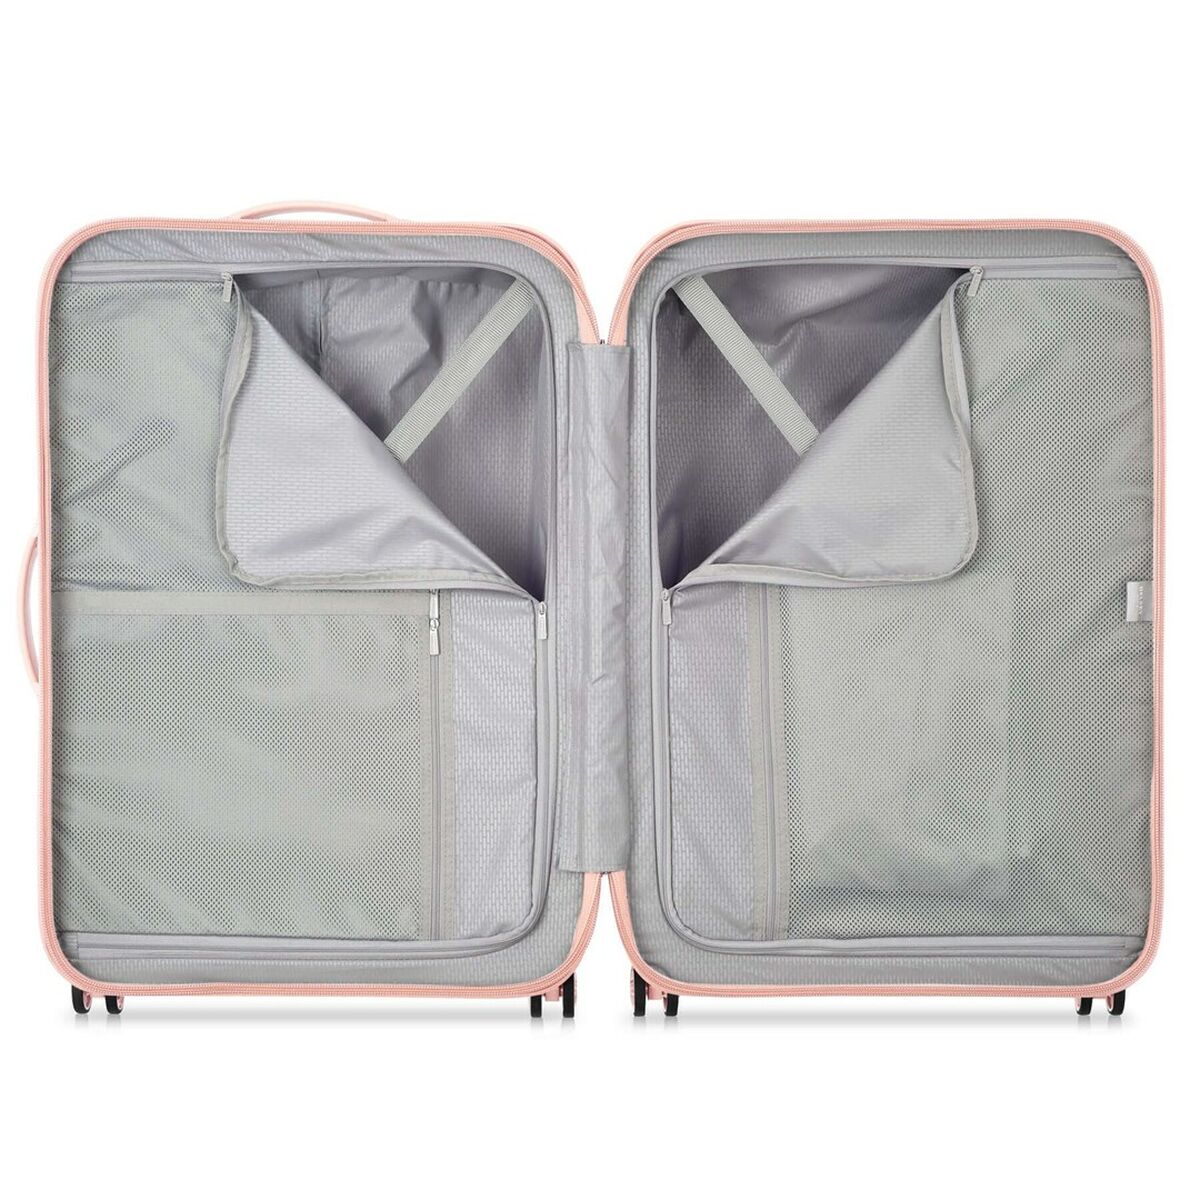 Koffer groß Delsey Turenne Rosa 70 x 29,5 x 47 cm